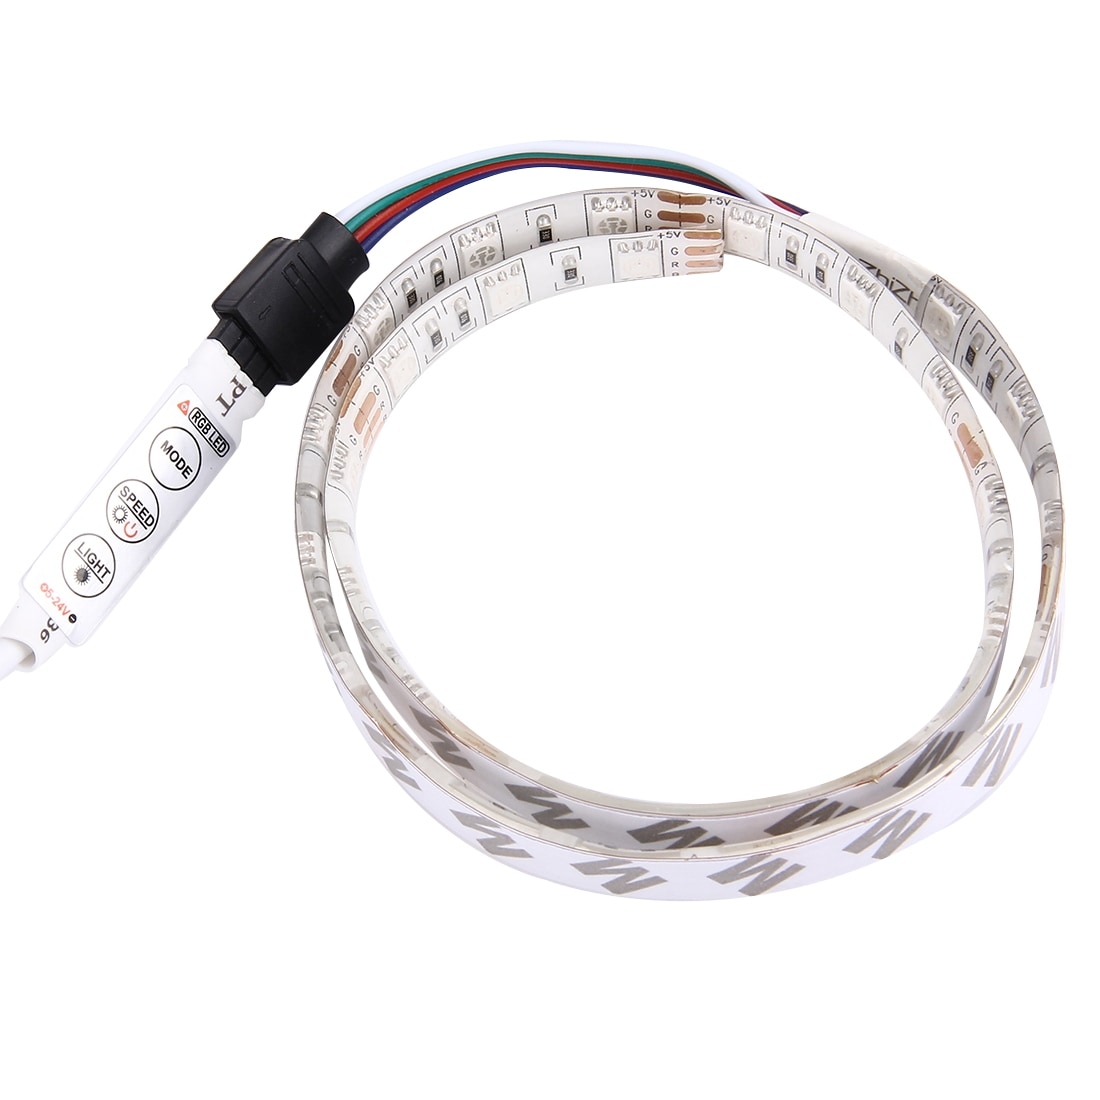 USB LED snoer 50cm met 20 verschillende lichteffecten